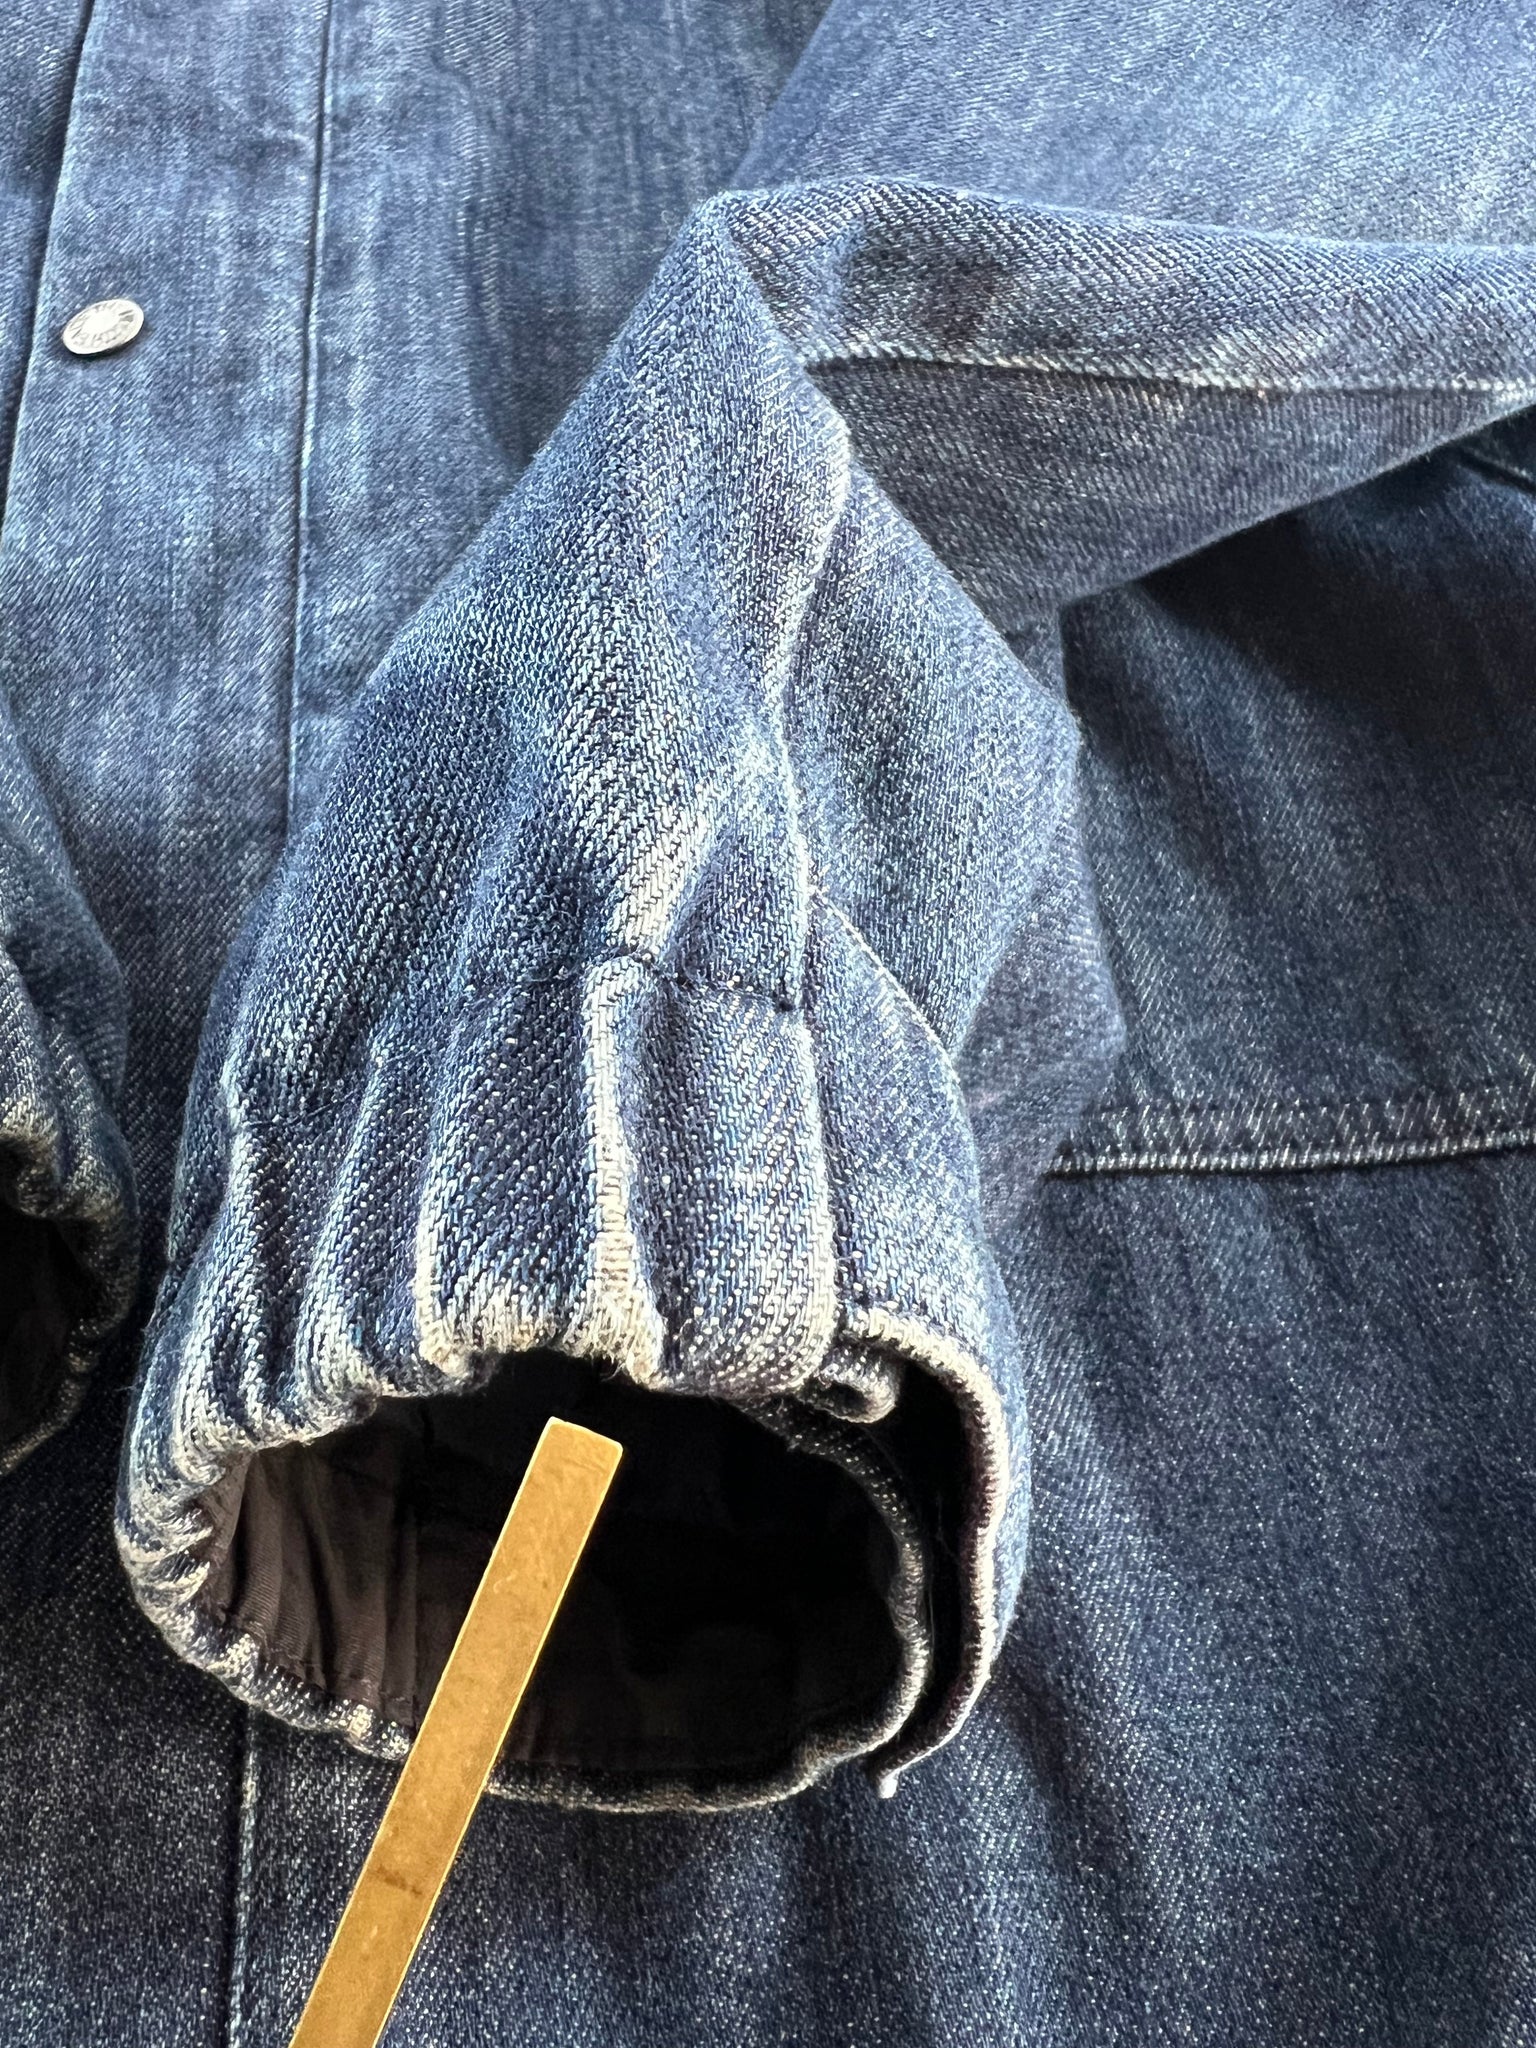 2015 Supreme North Face denim hooded jacket L